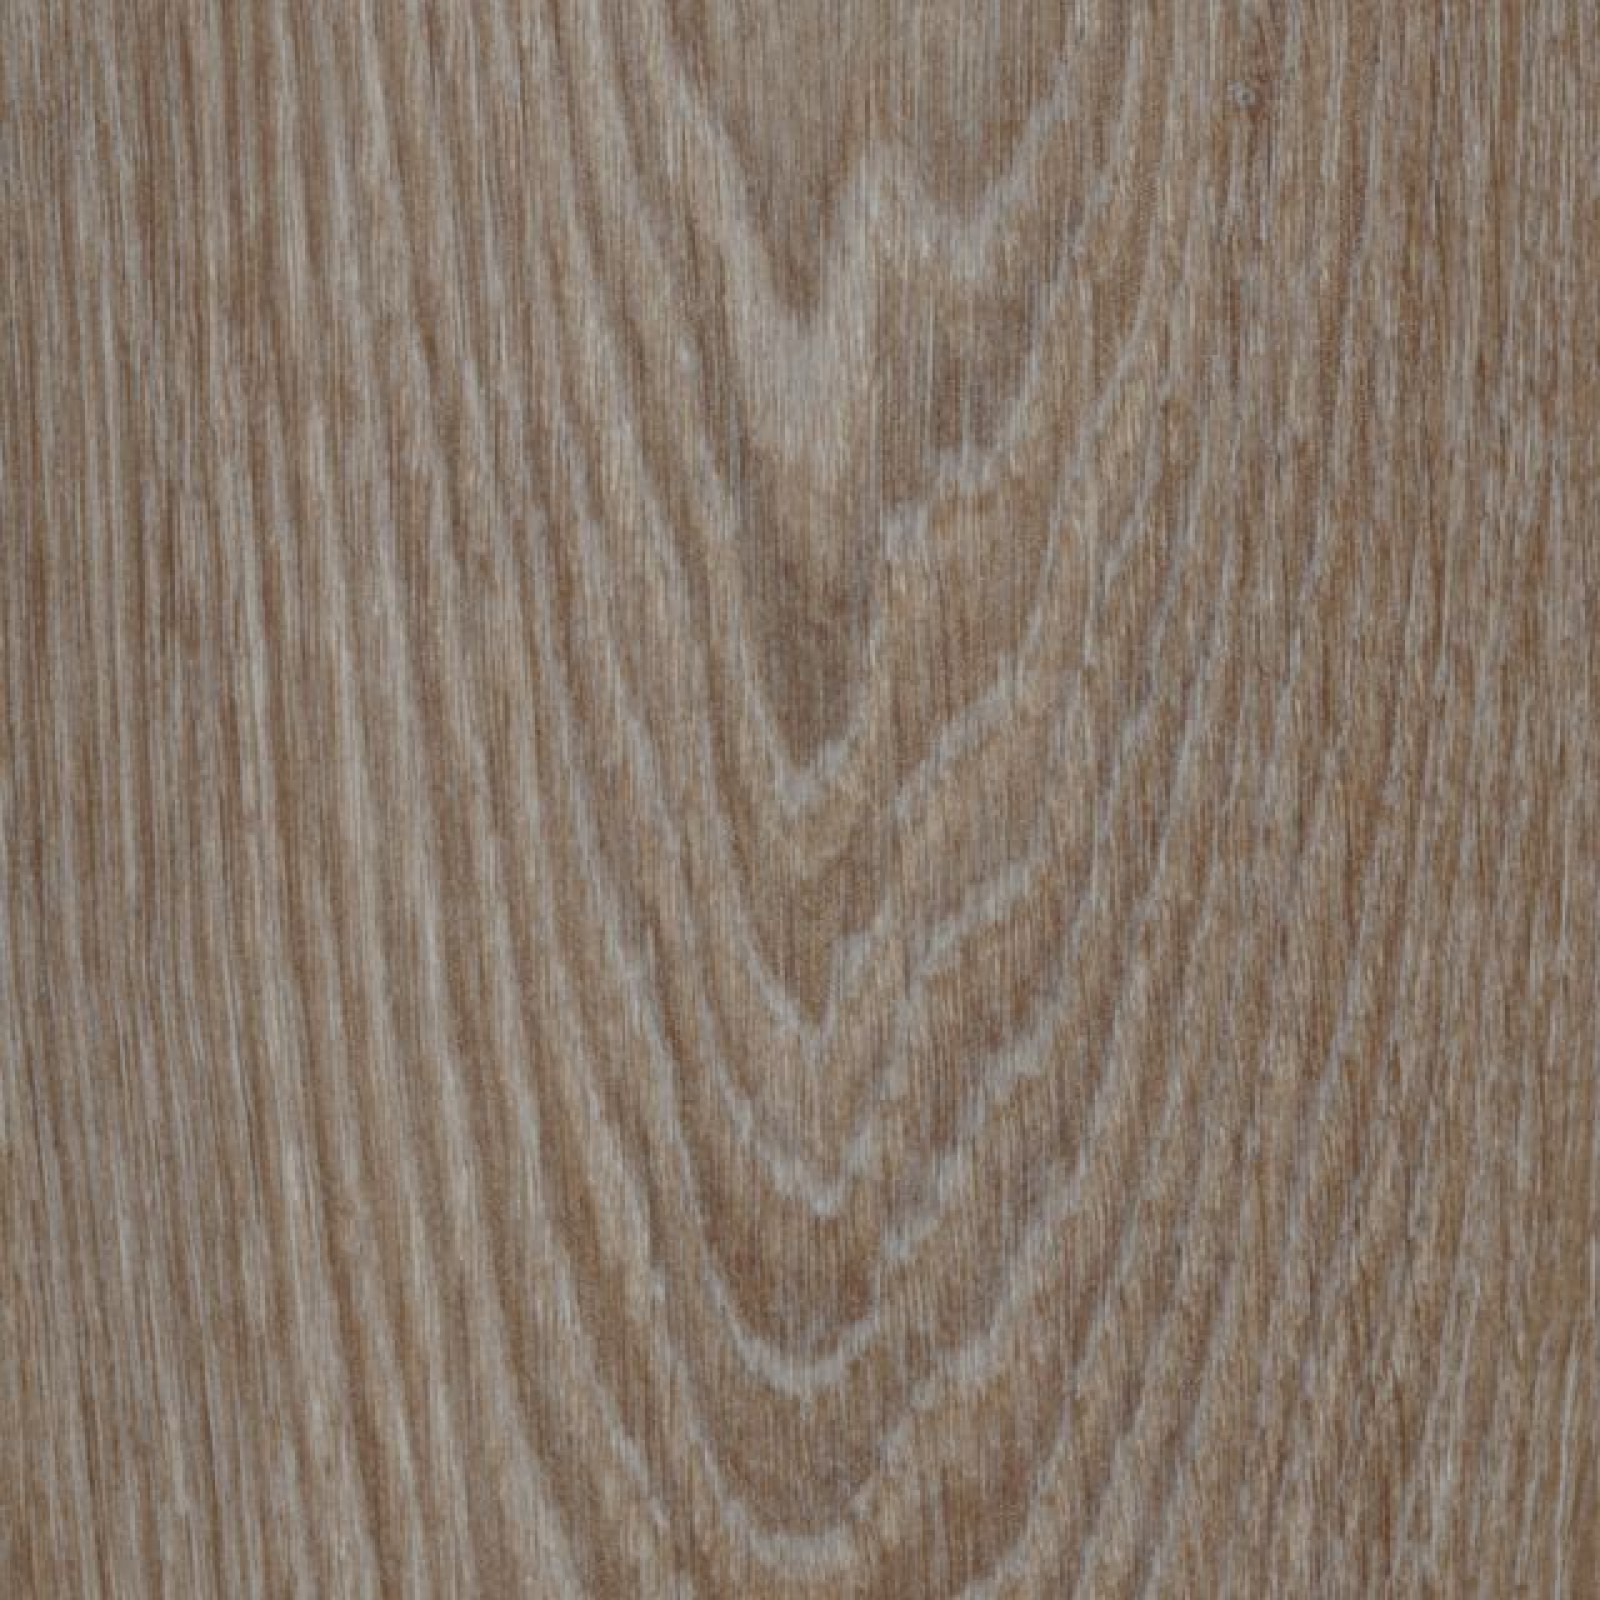 Vzor - 63410 hazelnut timber (120x20cm)